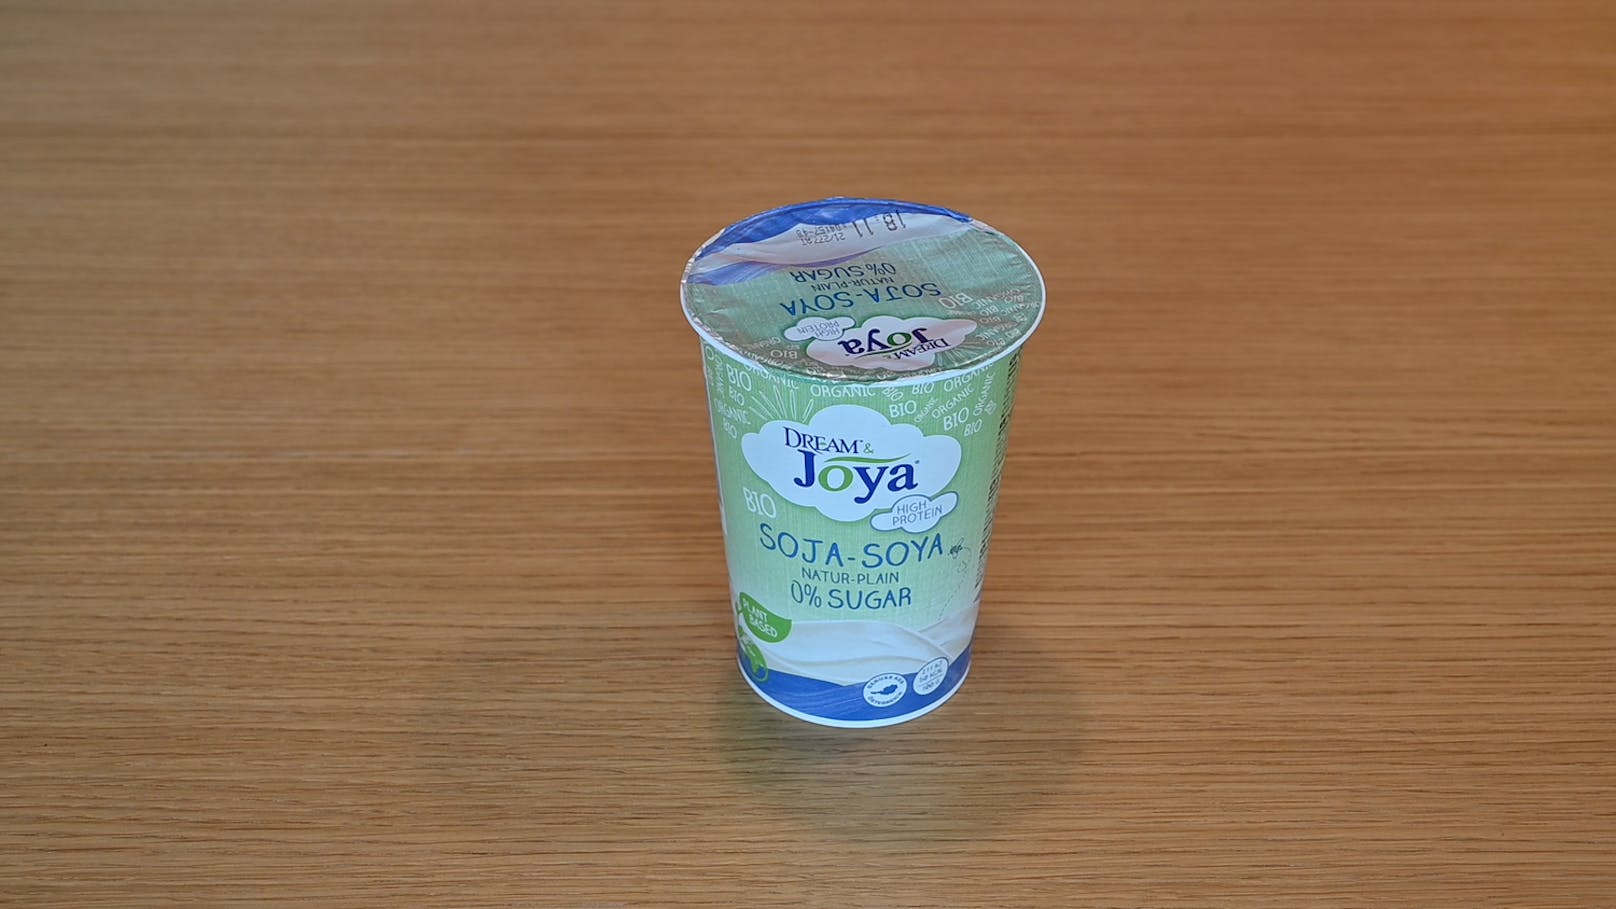 Für Centbeträge erhält man dieses Sojajoghurt.